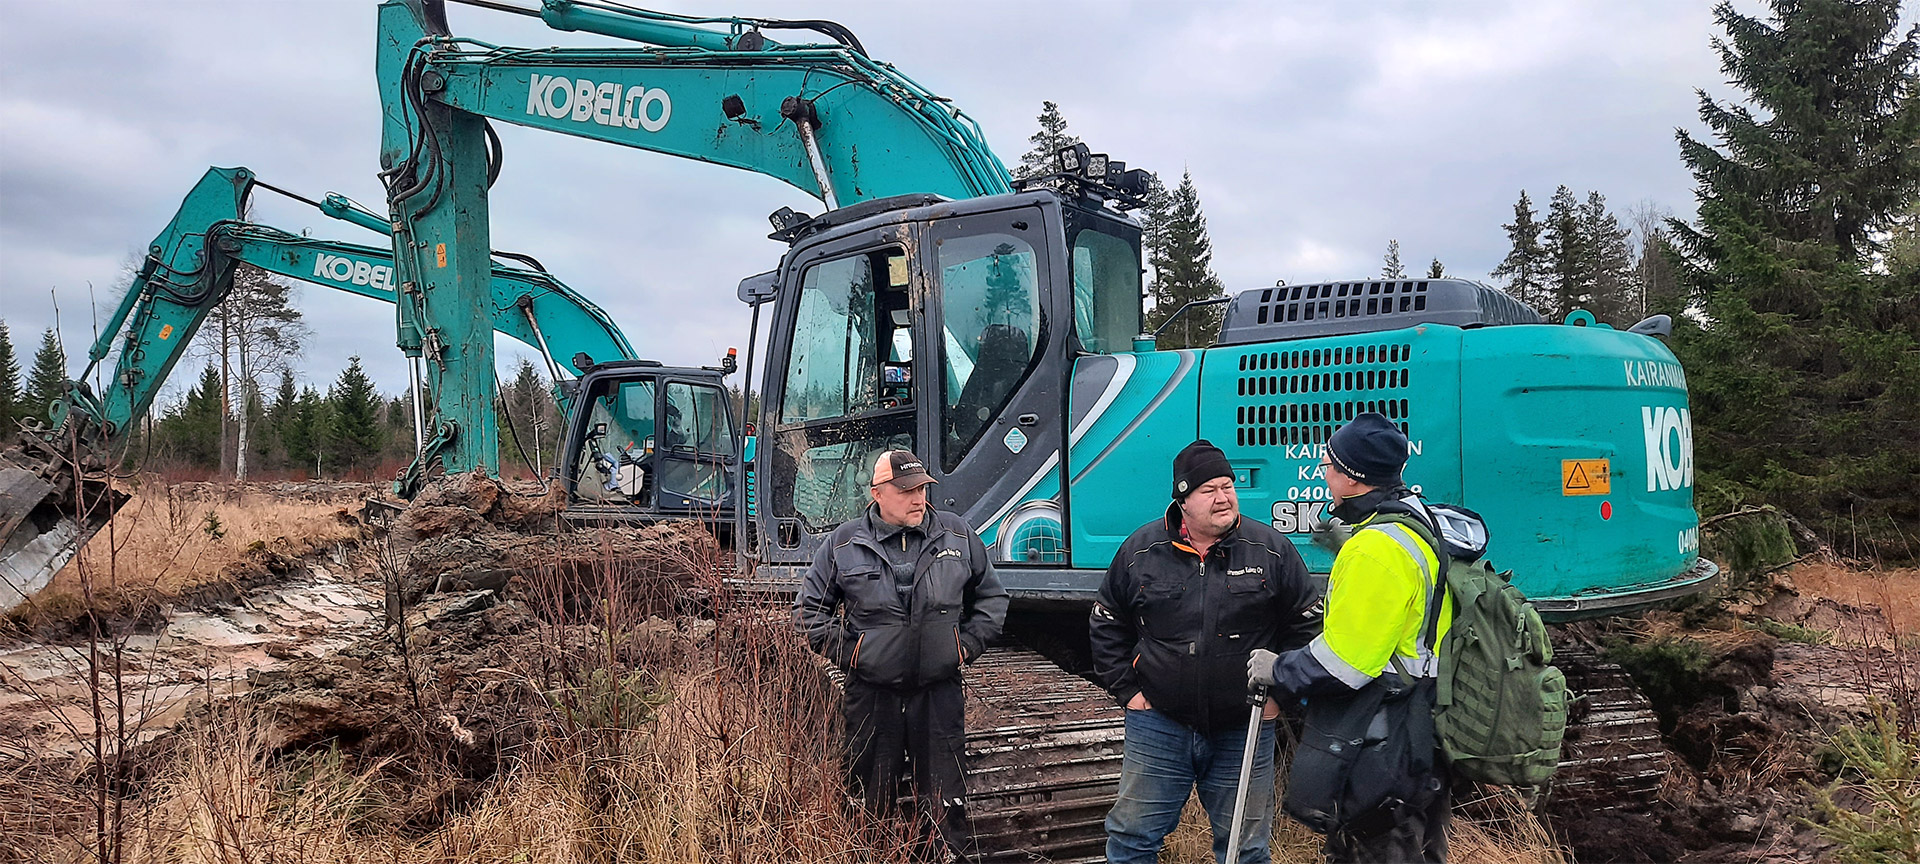 Två grävmaskiner som bearbetar ett våtmarksområde. I förgrunden står tre personer och diskuterar bredvid en av maskinerna.